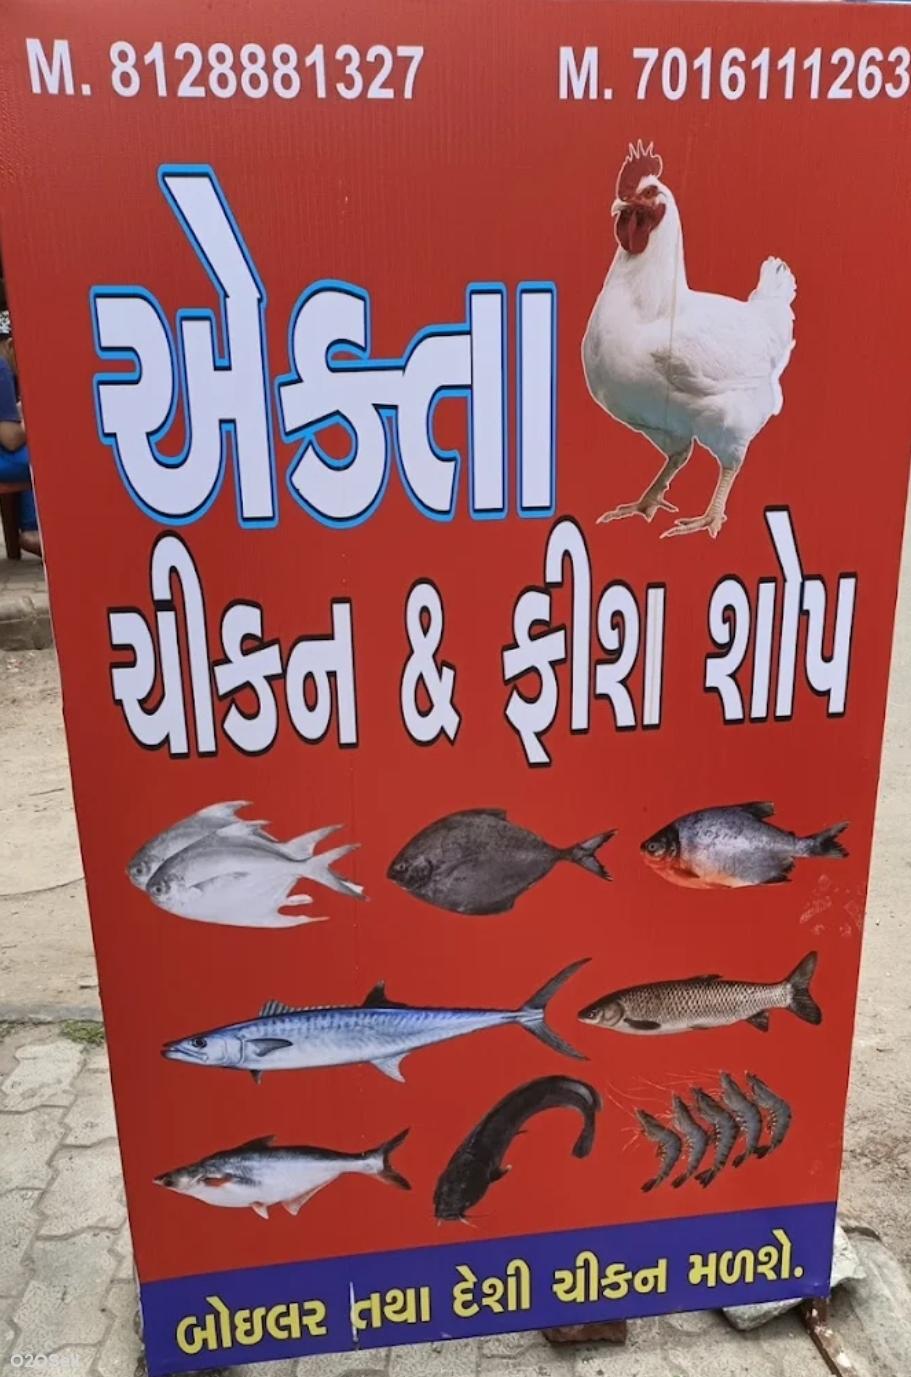 Ekta chicken mutton&fish shop - Profile Image